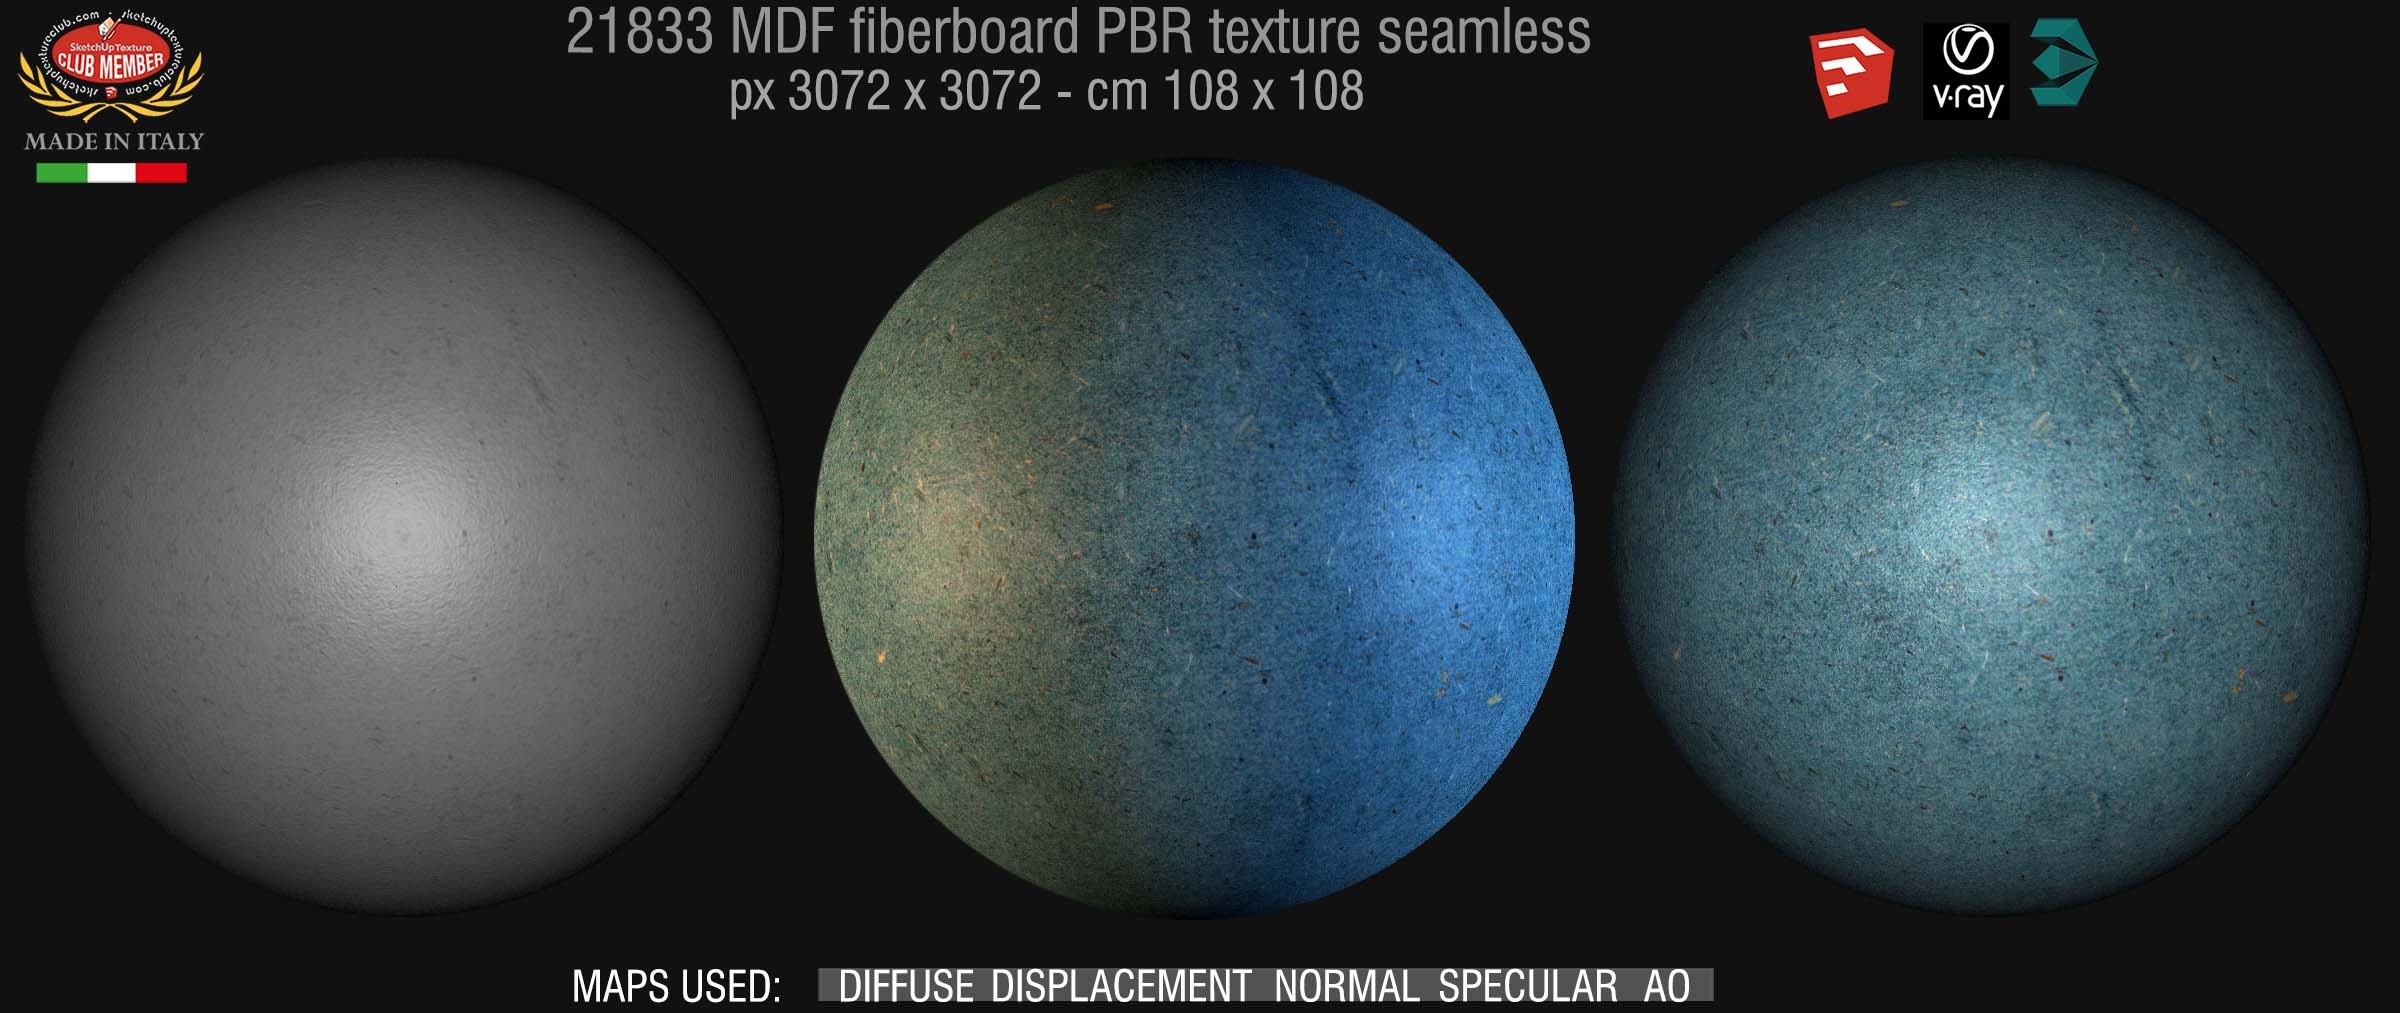 21833 MDF fiberboard PBR texture seamless demo